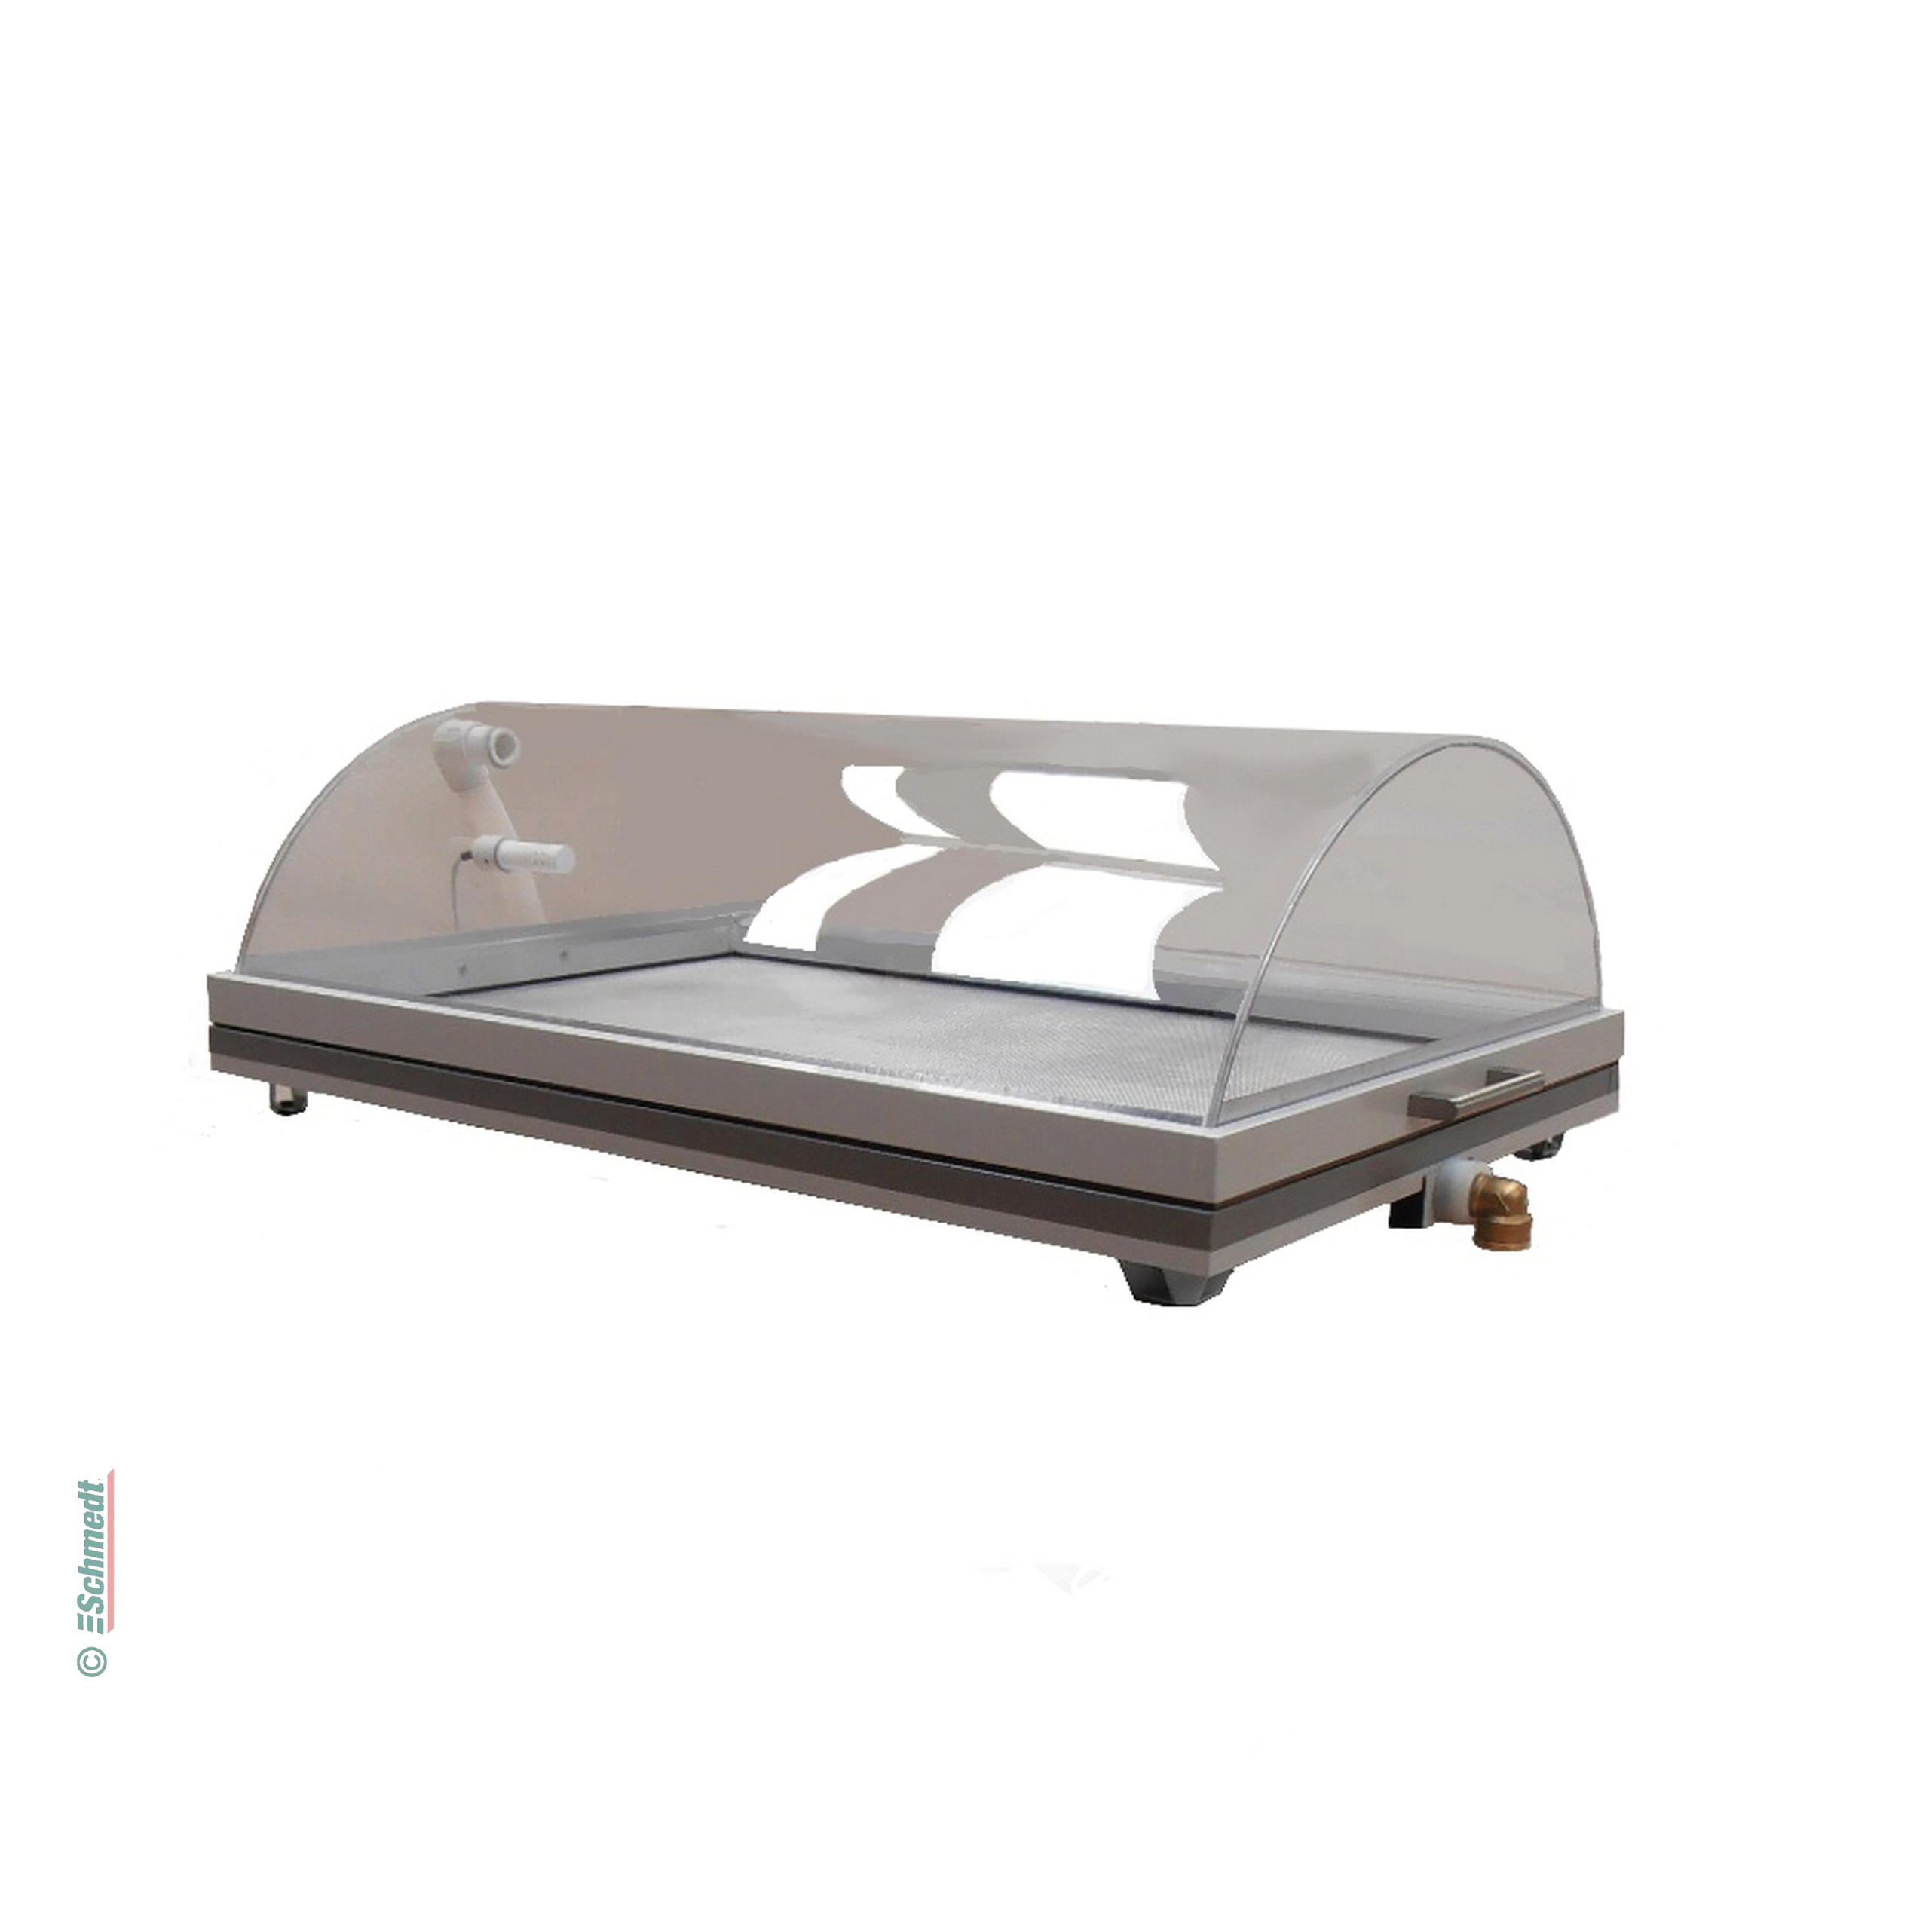 Couverture pour l'humidification - pour table basse tension NDT 11 - » Hauteur: 38 cm
» Régulateur HD1 
» Humidificateur d'ultrason avec f...